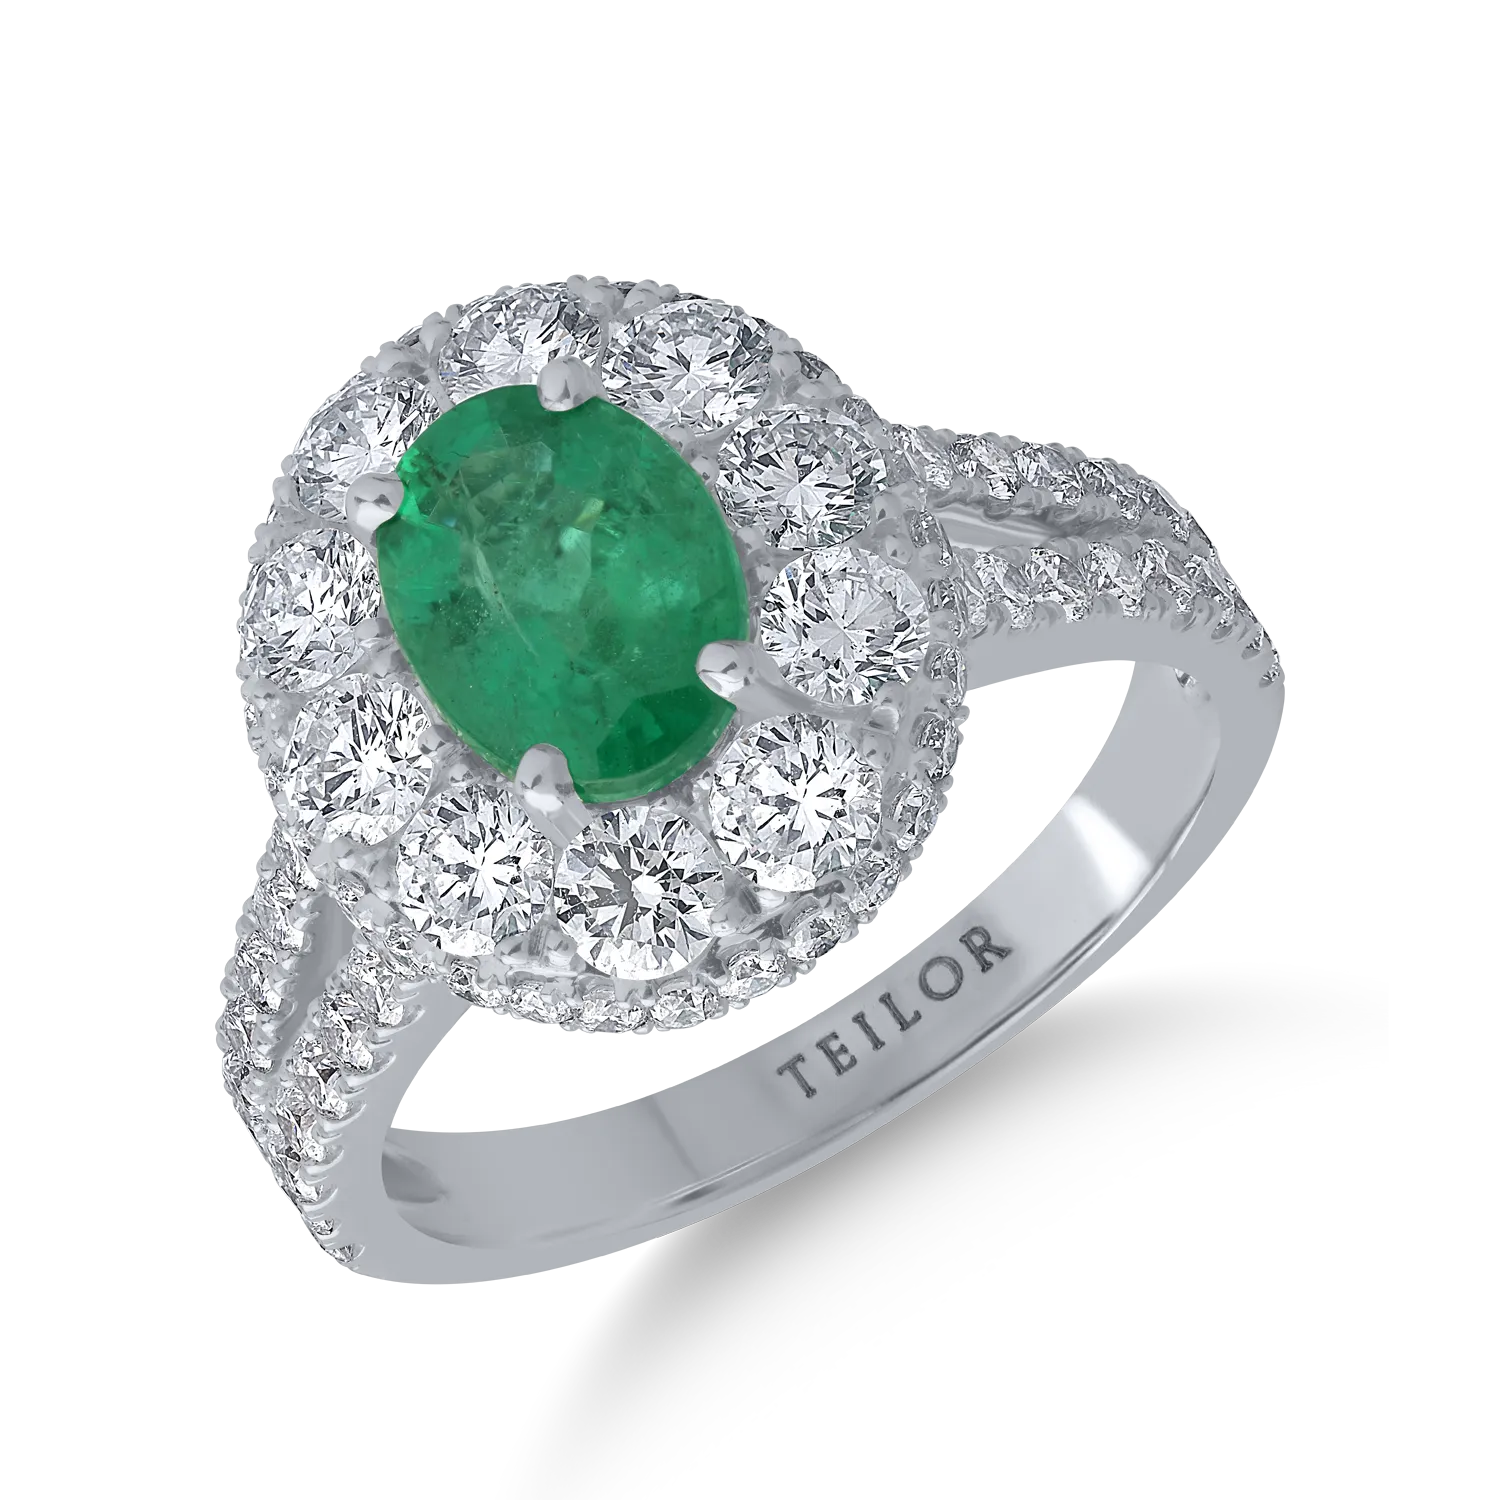 18K fehérarany gyűrű 1.31ct smaragddal és 1.8ct gyémántokkal